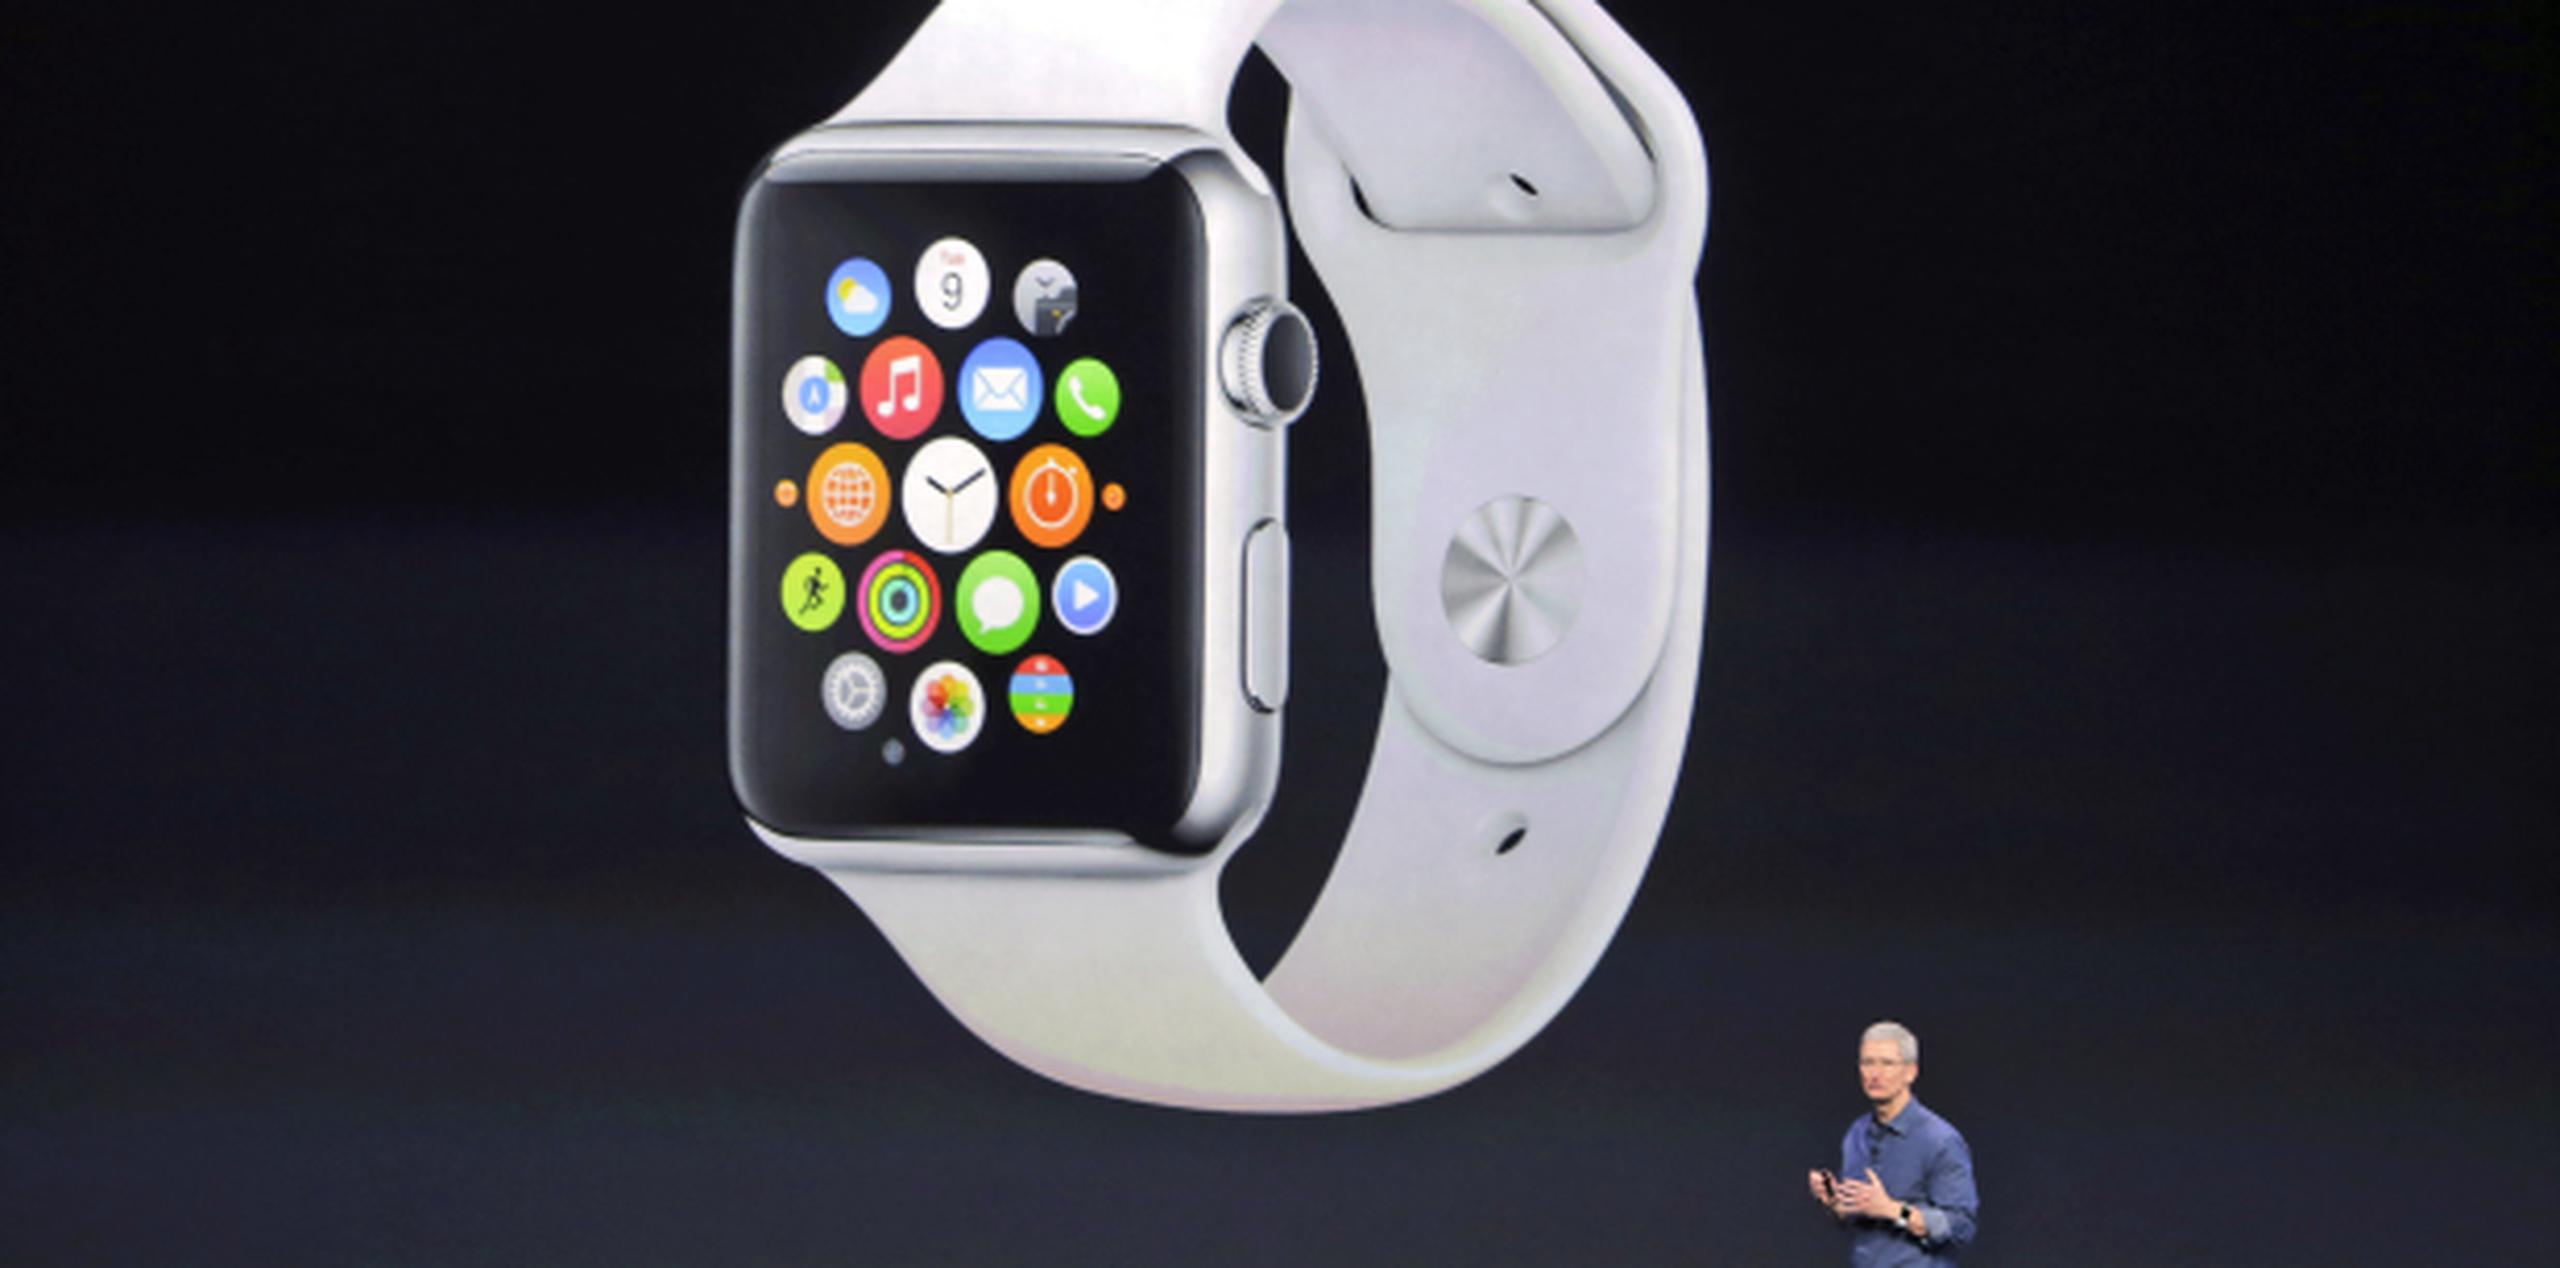 Tim Cook describió al Apple Watch como el "dispositivo más personal que hemos fabricado". (AP / Marcio José Sánchez)